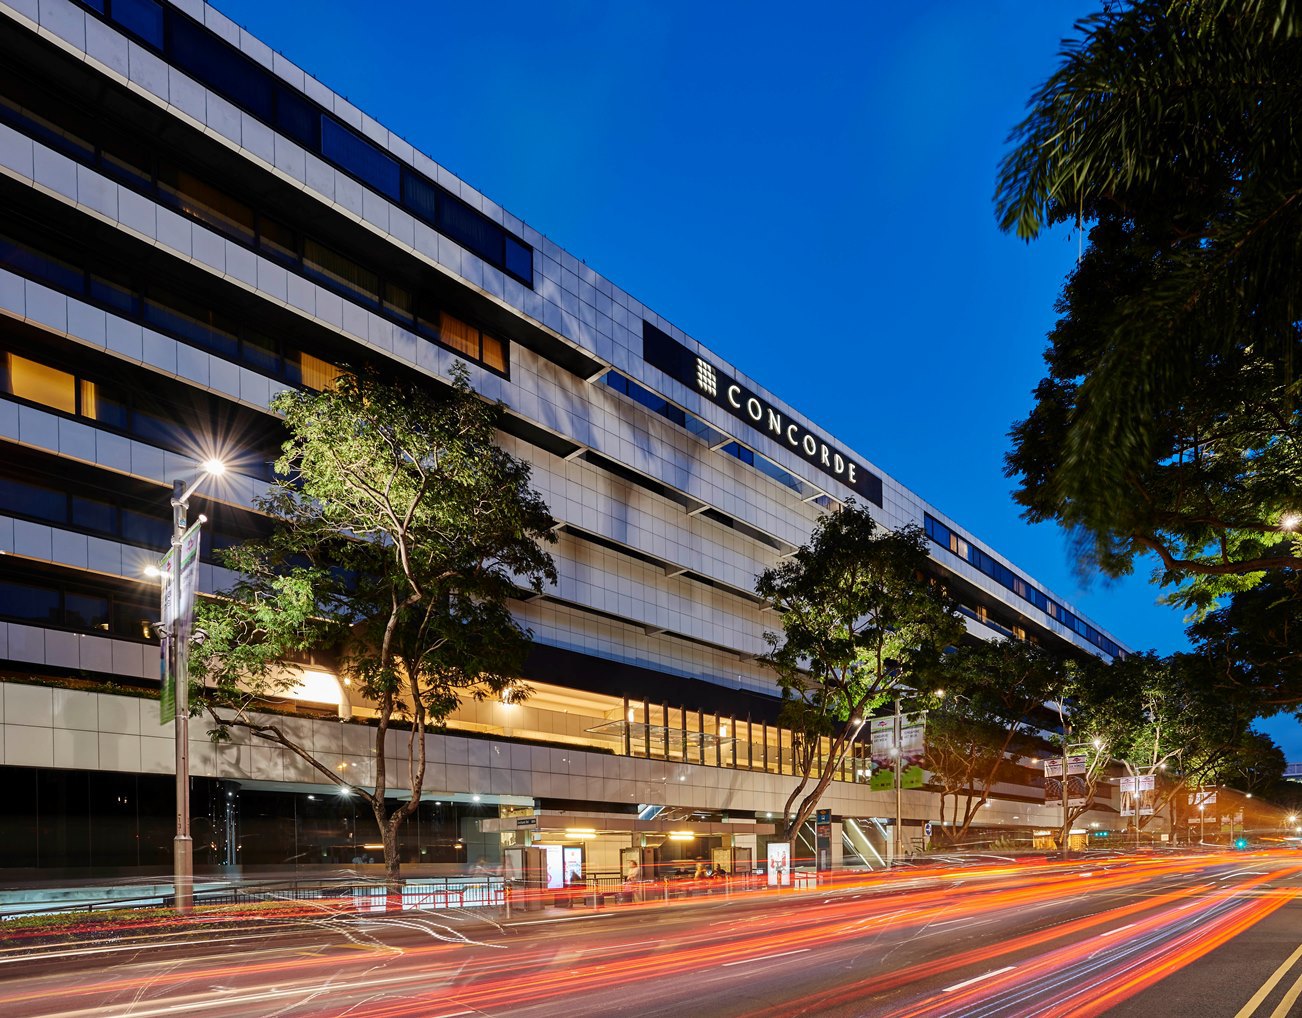 コンコルド ホテル シンガポール Concorde Hotel Singapore コンコルドホテルのご案内 楽天トラベル